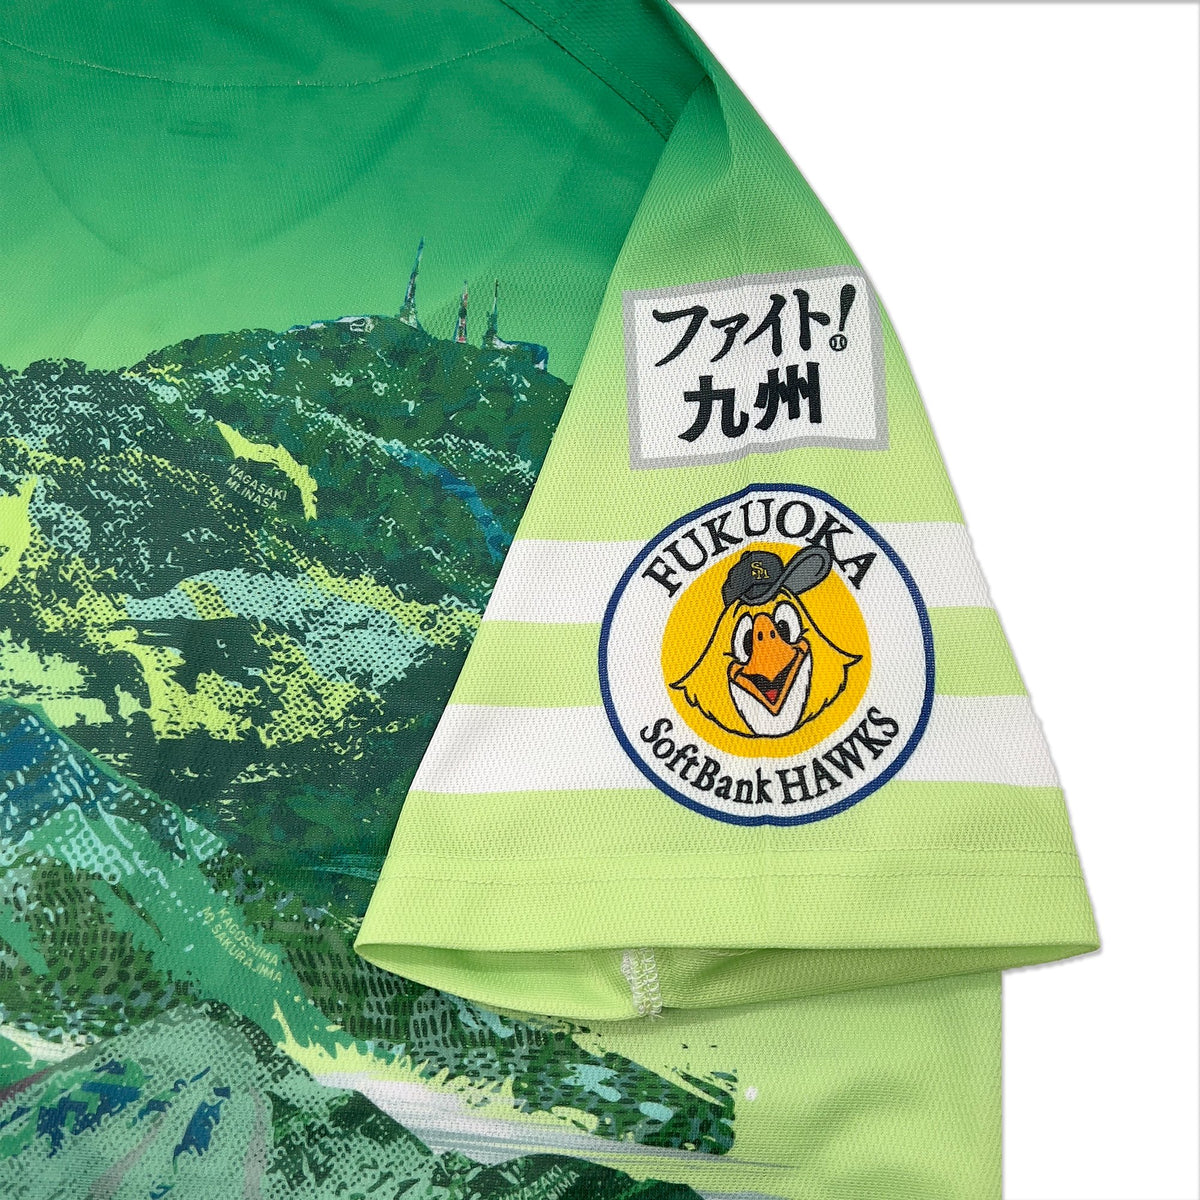 New NPB Japan Fukuoka Softbank Hawks Baseball Fan Jersey Green - Sugoi JDM